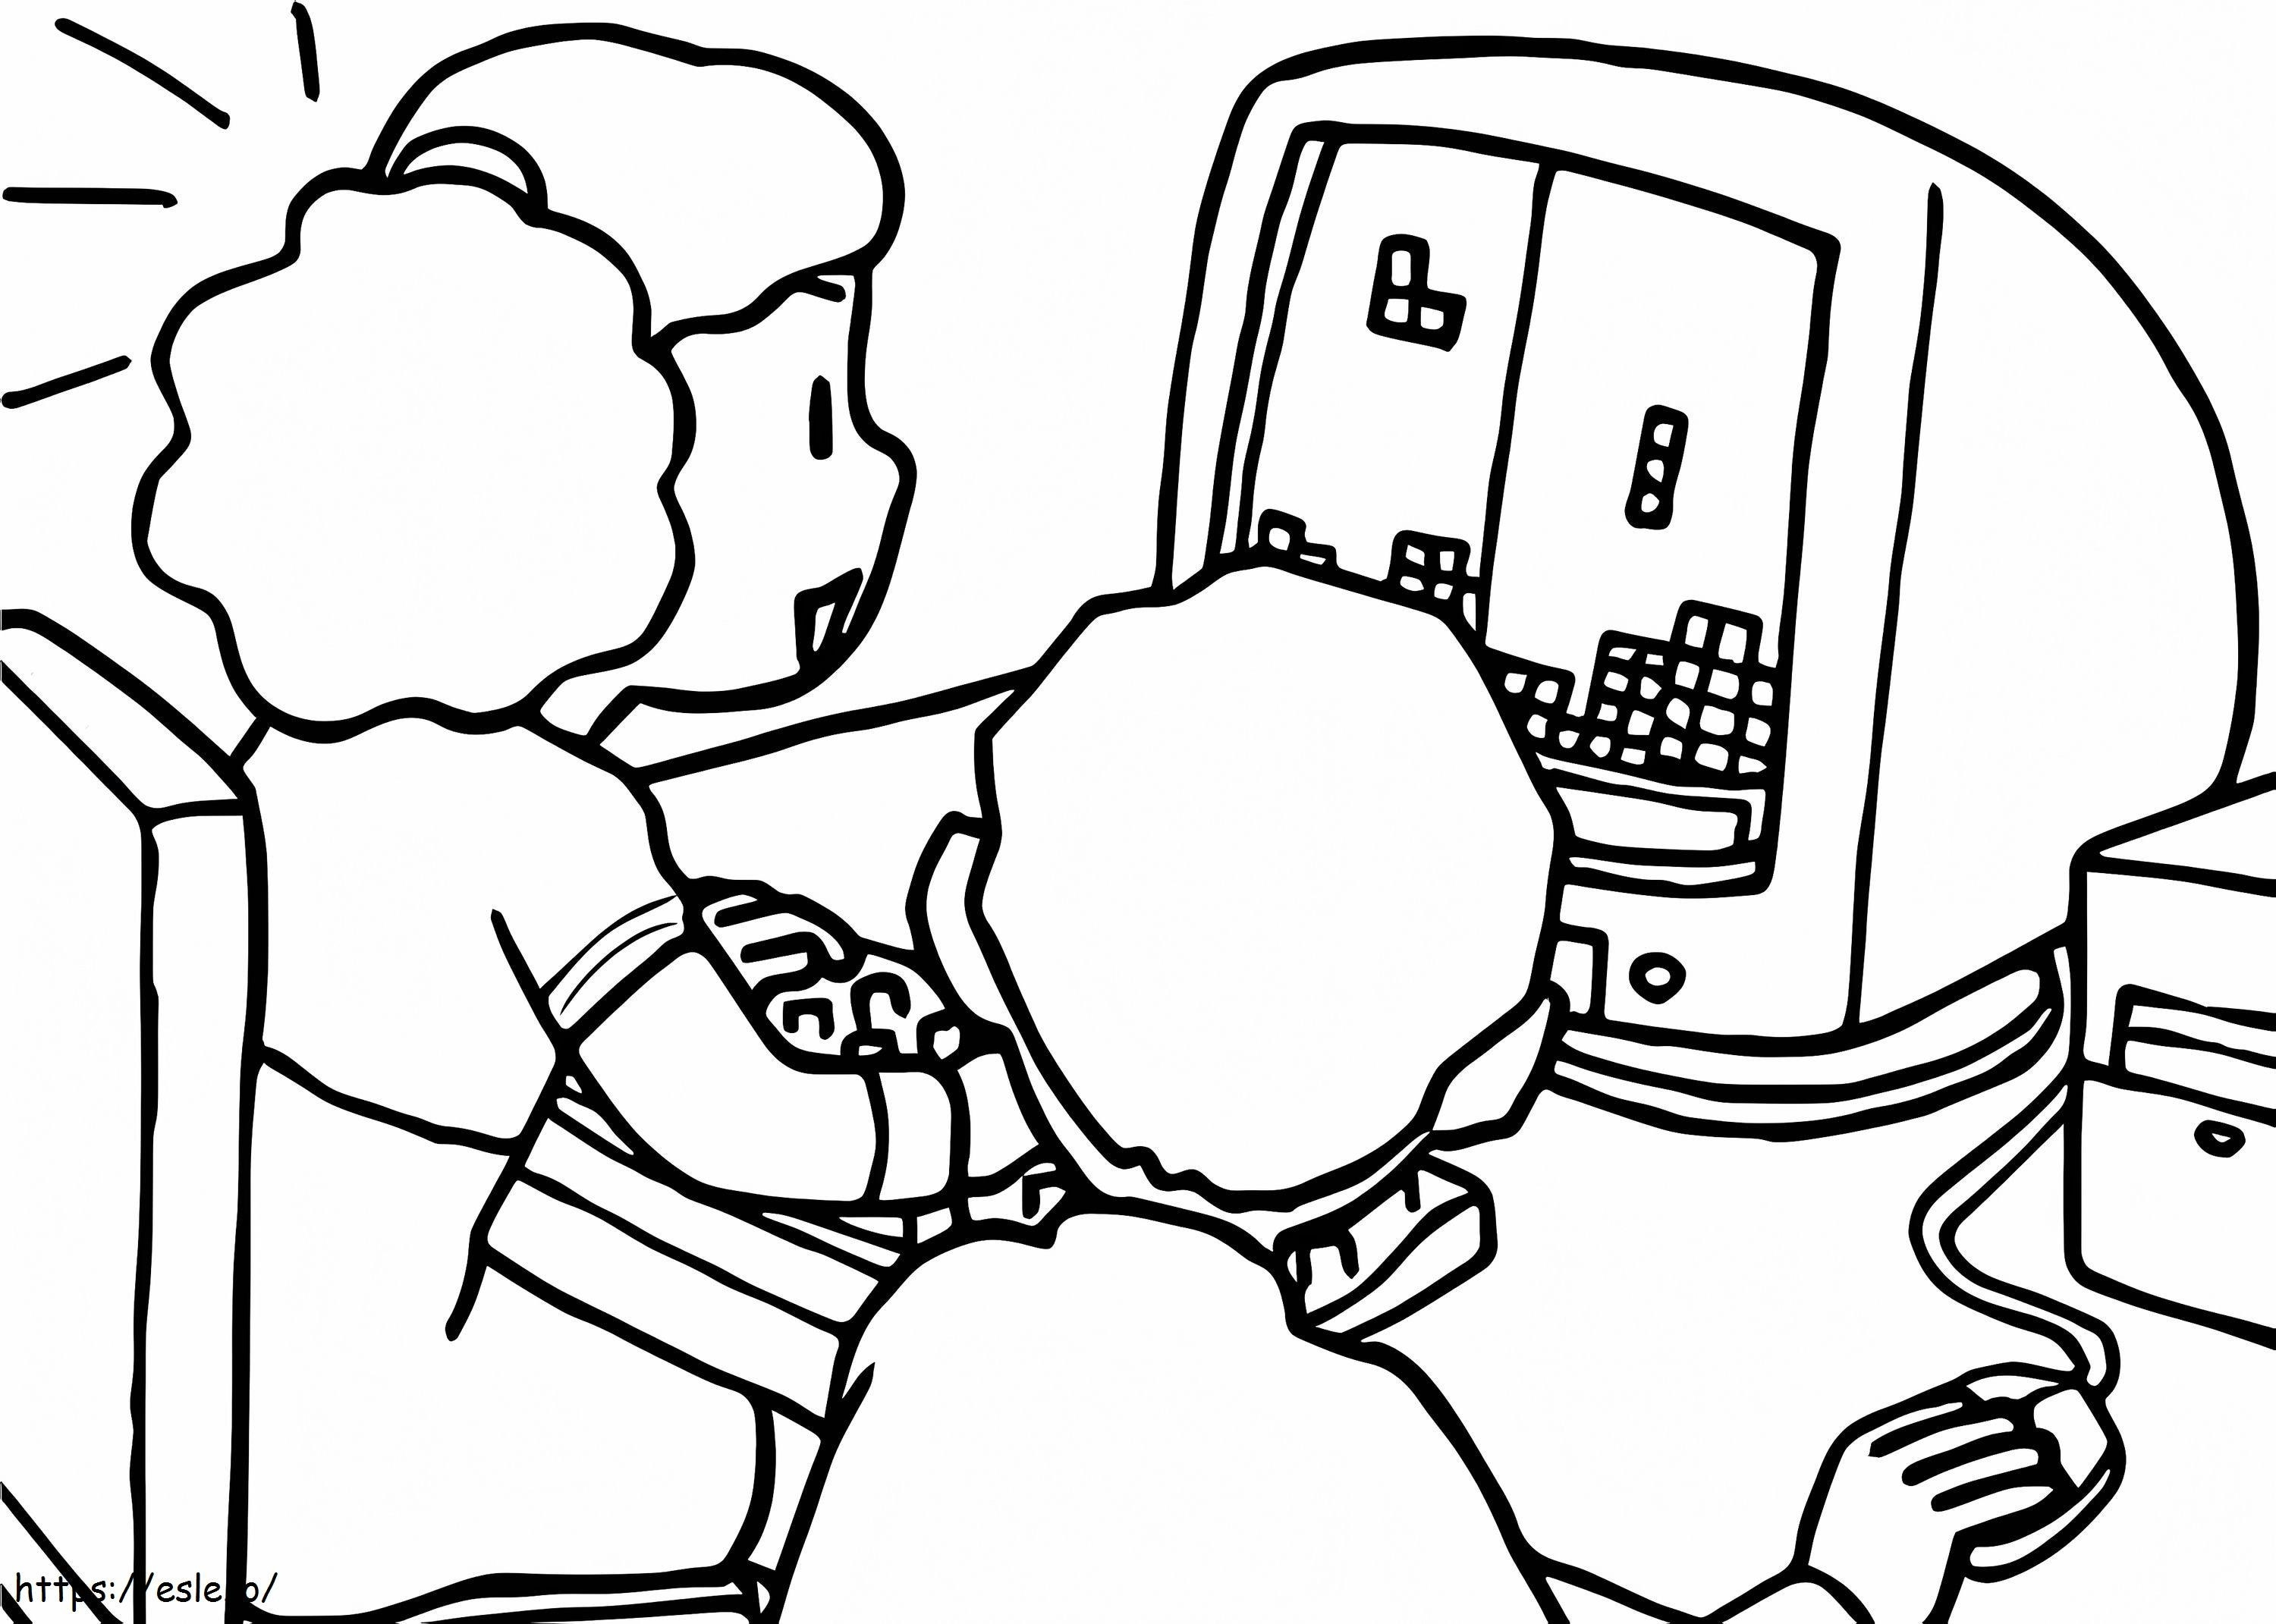 Bambini che giocano sul computer da colorare